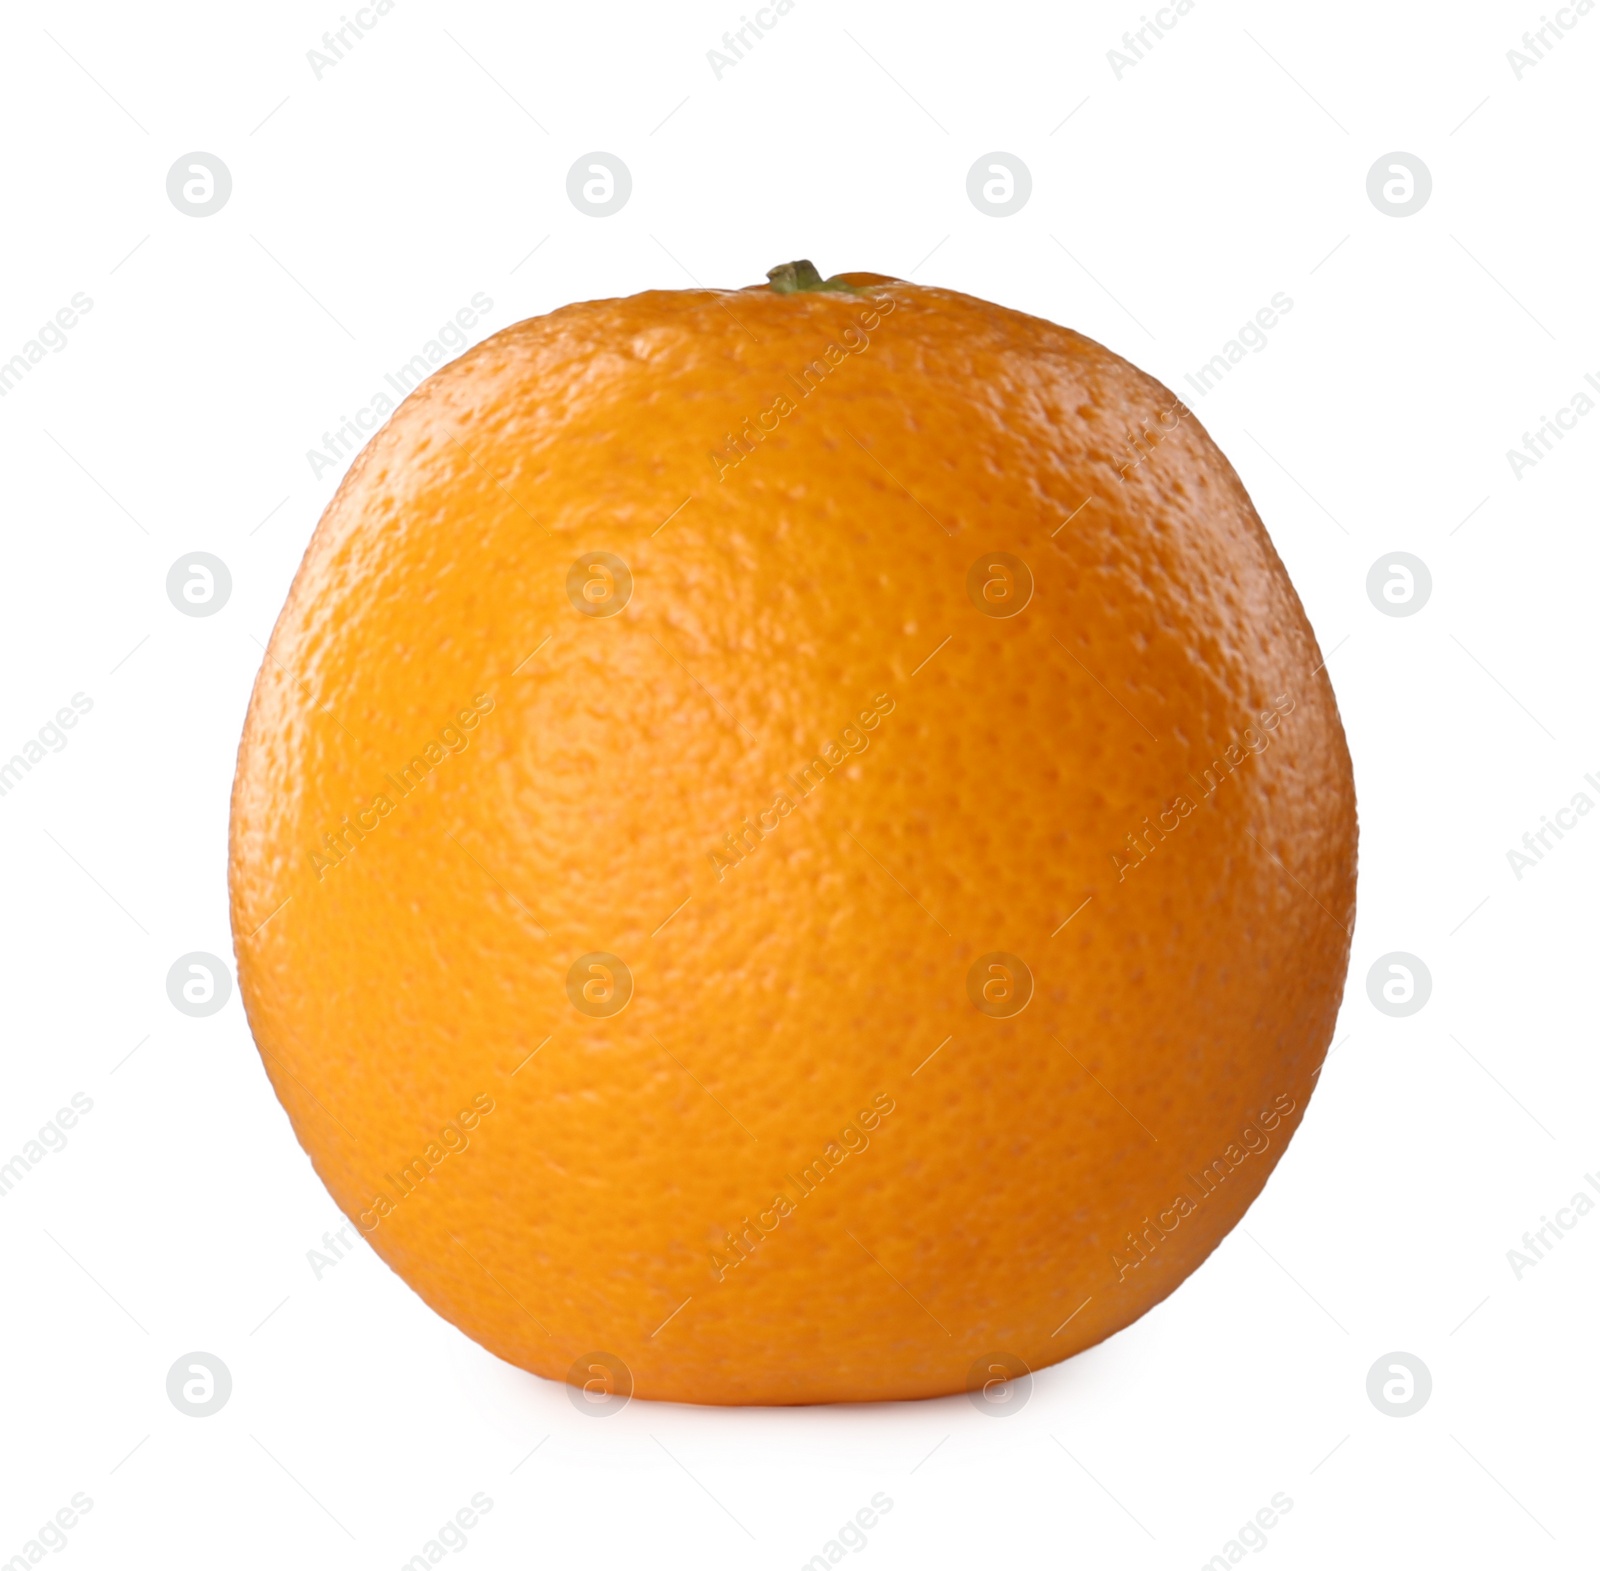 Photo of Delicious fresh ripe orange isolated on white